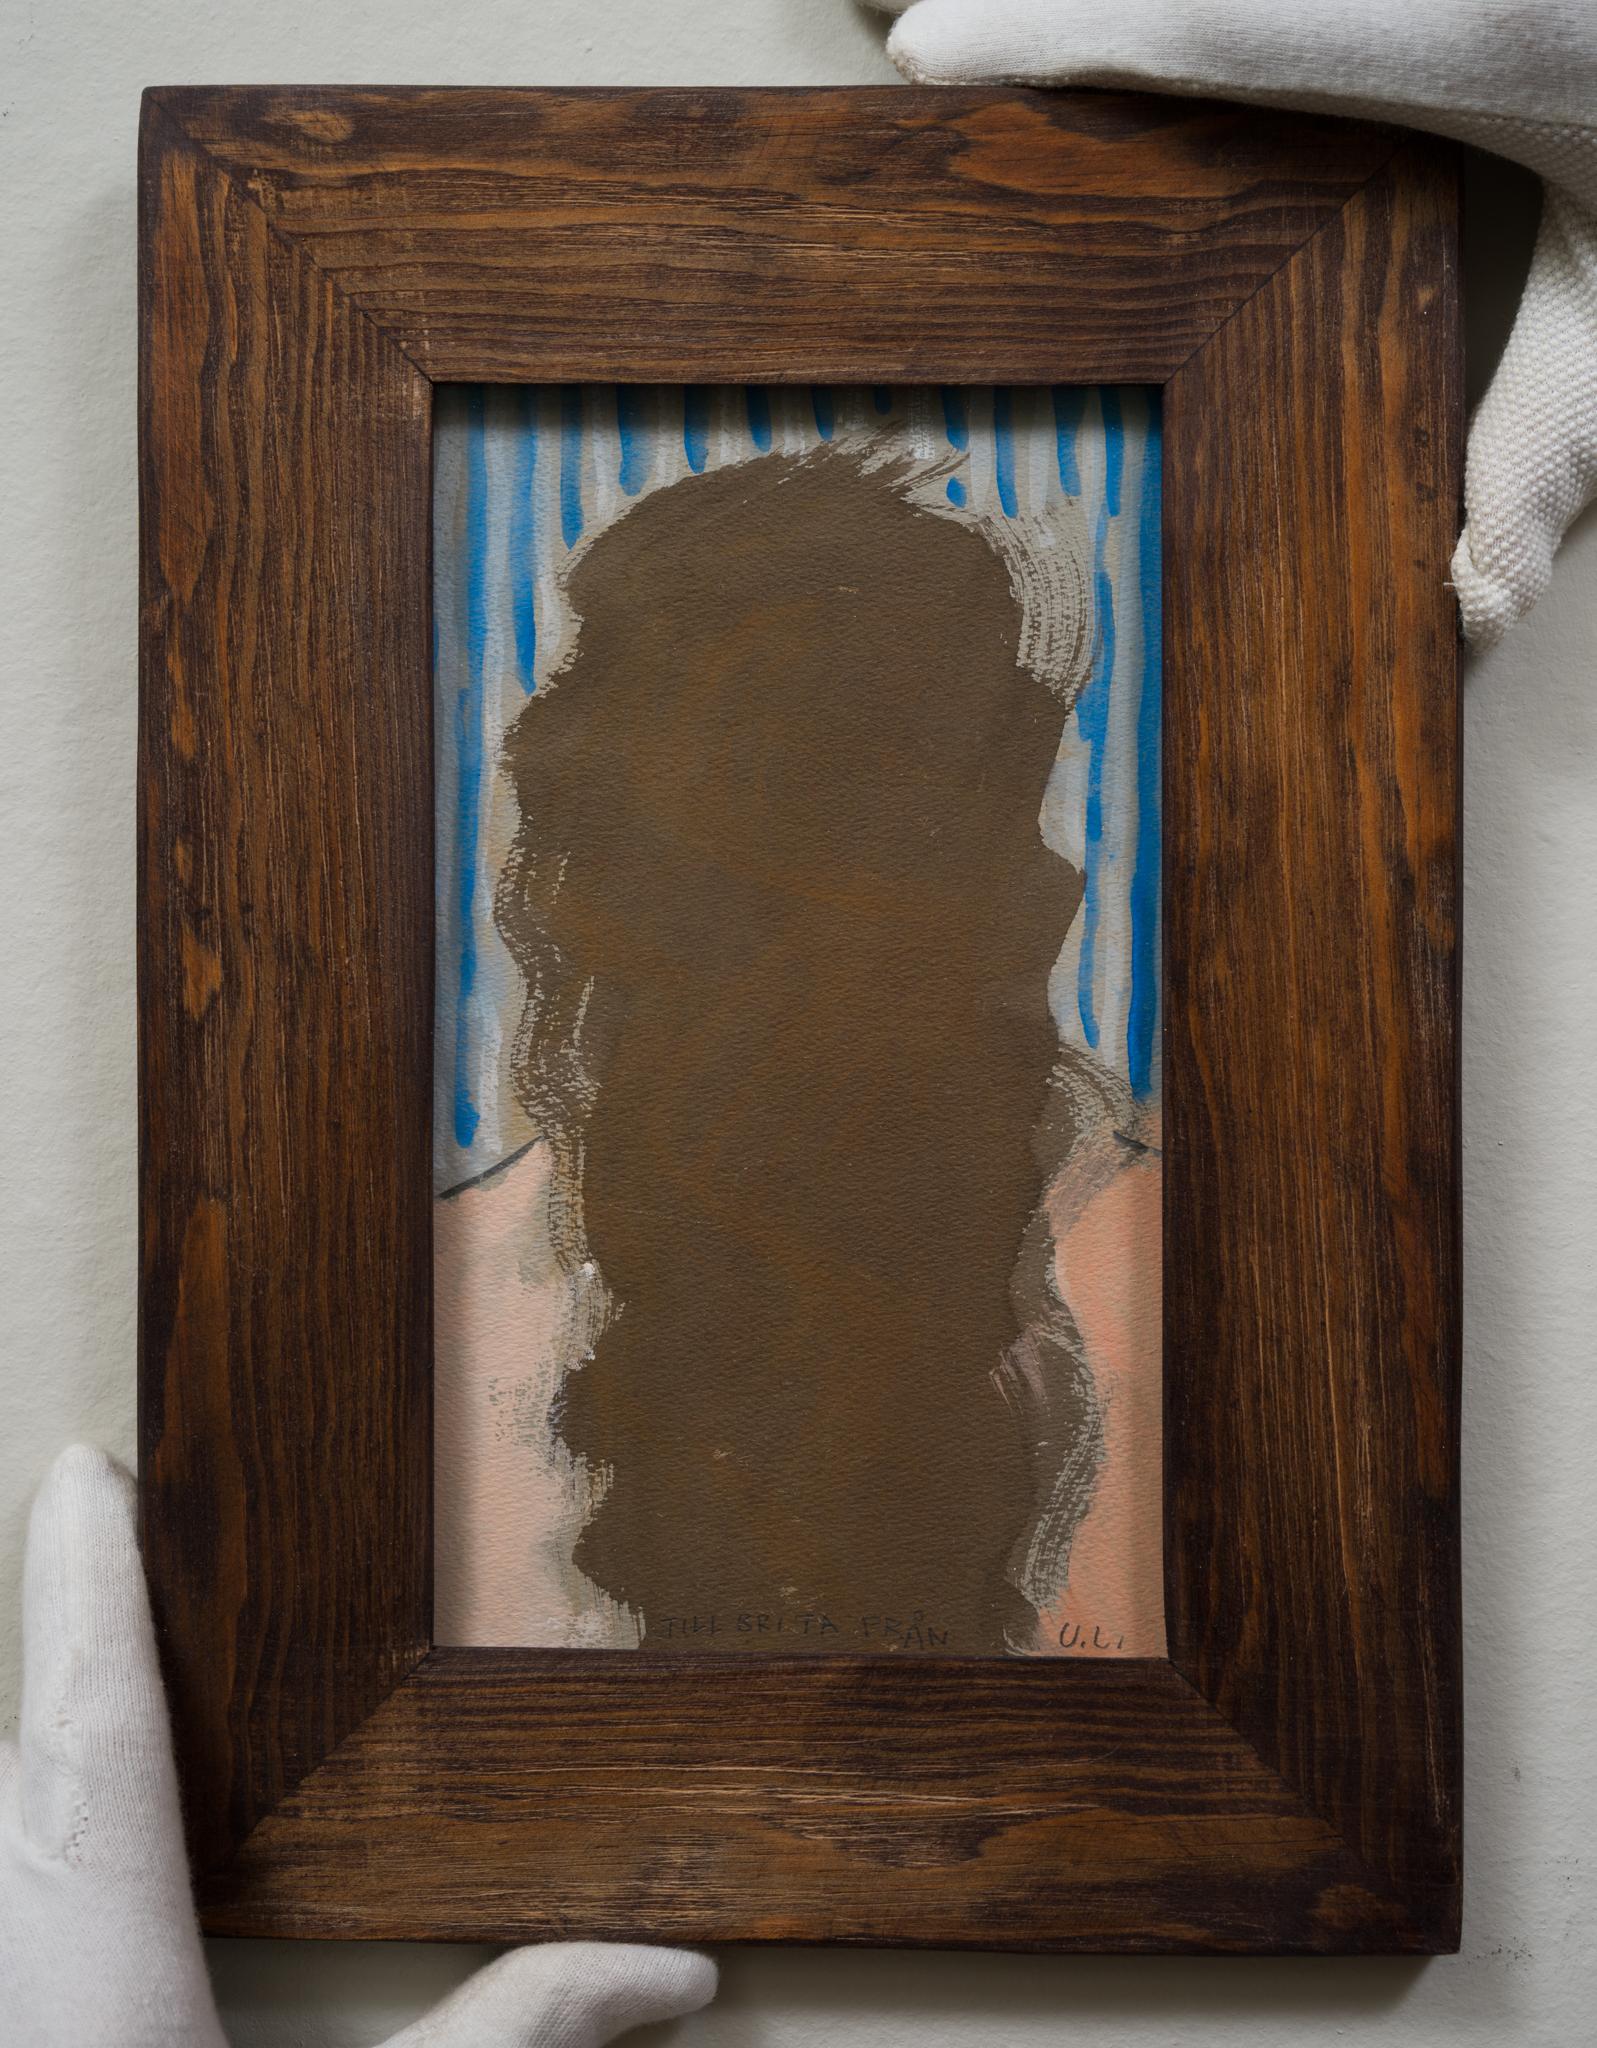 Dieses Gouache-Gemälde von Ulf Linde, einem vielseitigen Schweden, zeigt eine einzigartige Darstellung einer Frau in der Rückenansicht vor einem blau-weiß gestreiften Hintergrund. Das Kunstwerk, das wahrscheinlich aus den 1970er oder 1980er Jahren